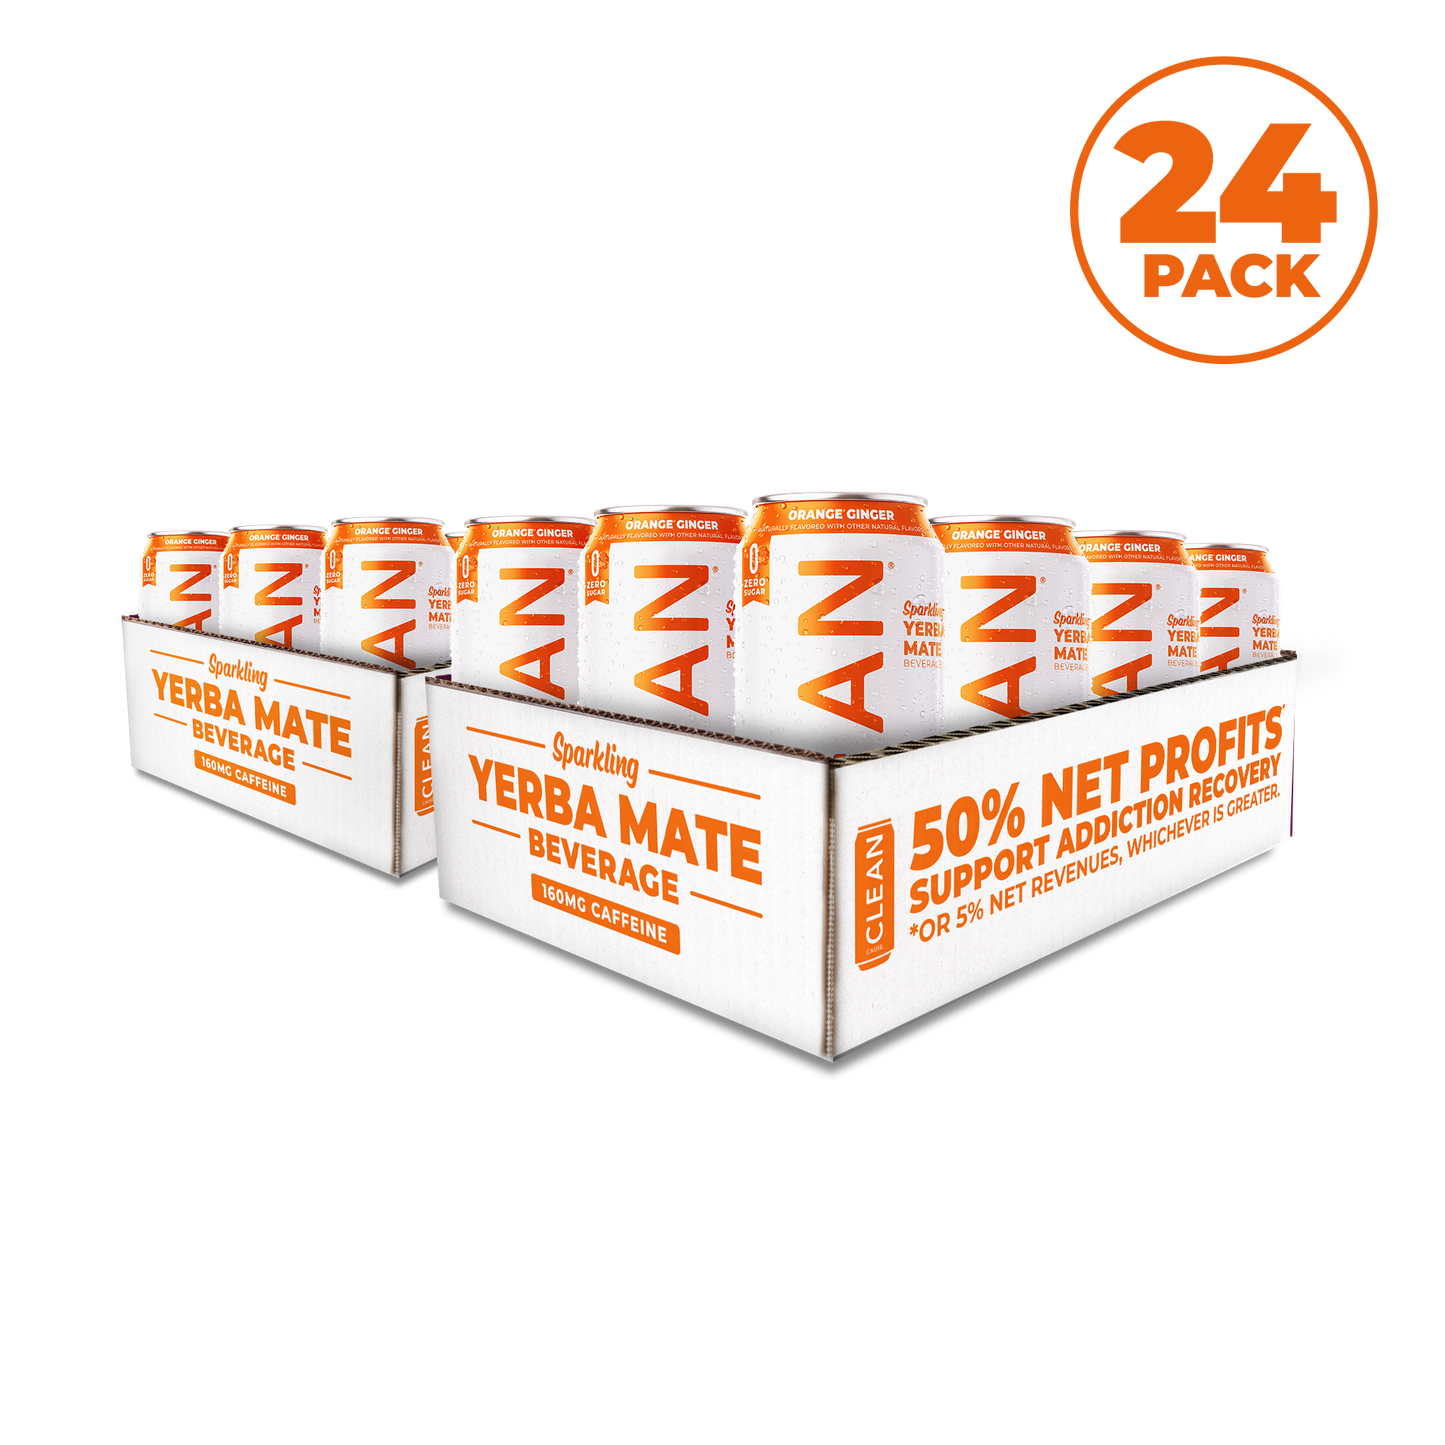 24-pack orange ginger yerba mate